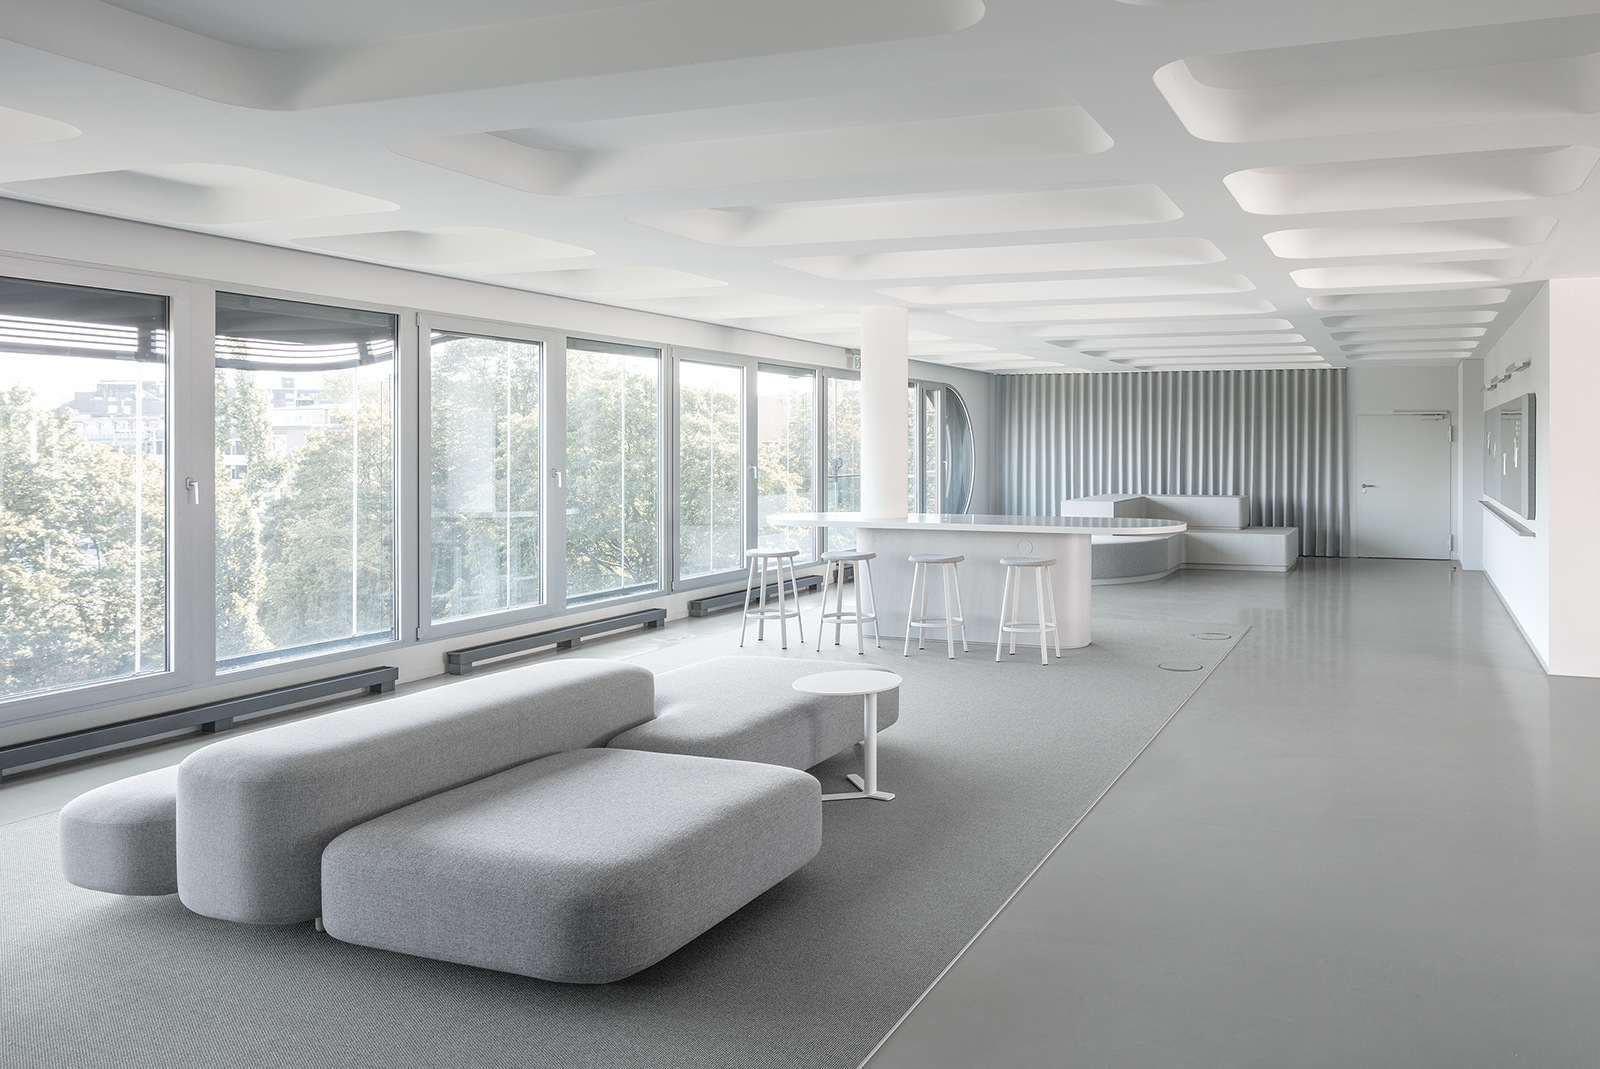 KNSKB+办事处-汉堡|ART-Arrakis | 建筑室内设计的创新与灵感